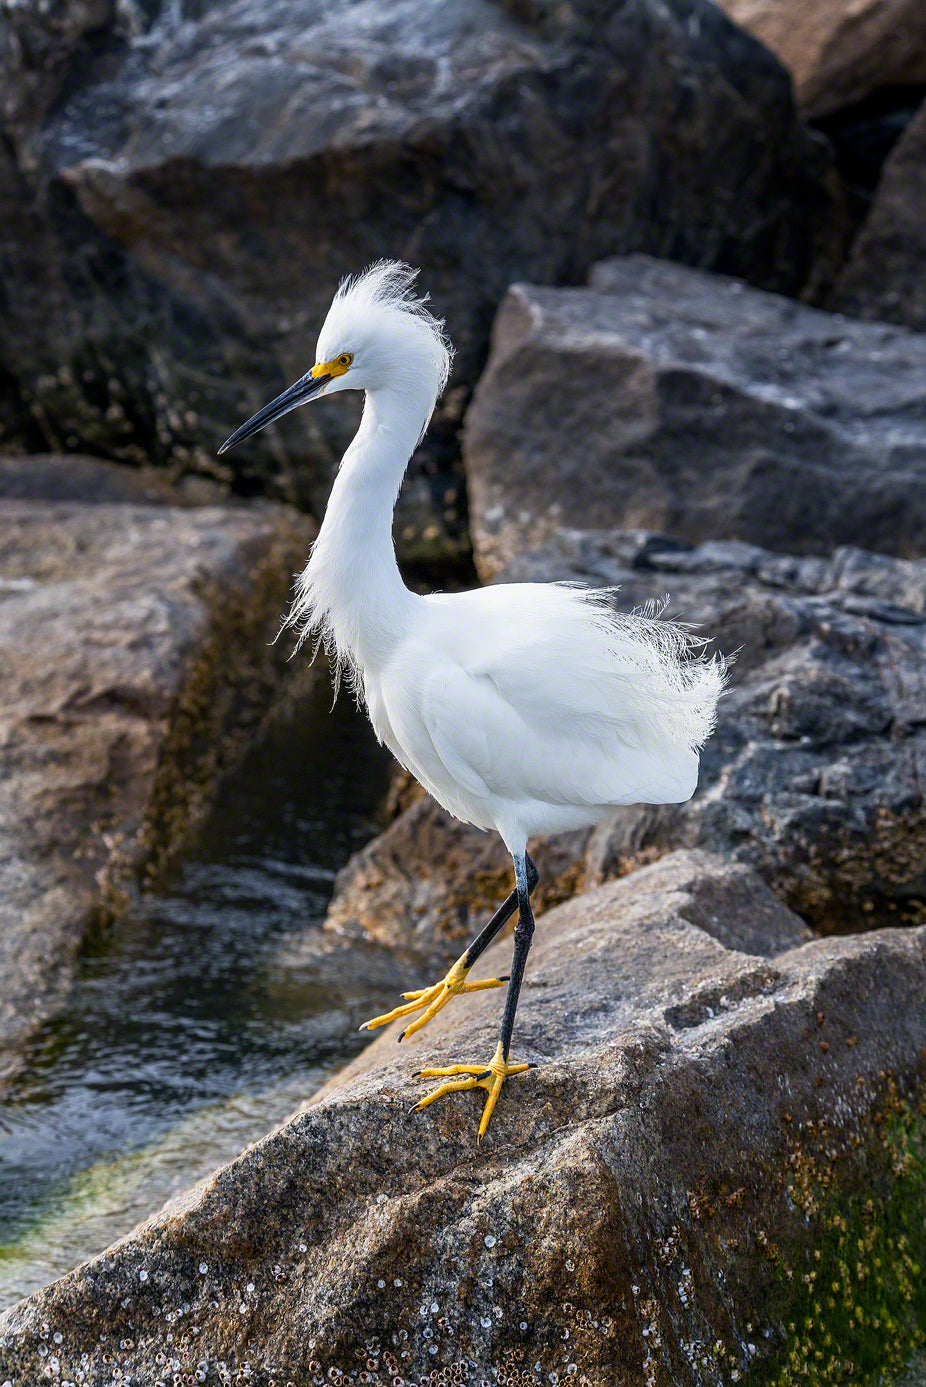 A snowy egret on jetty rocks 